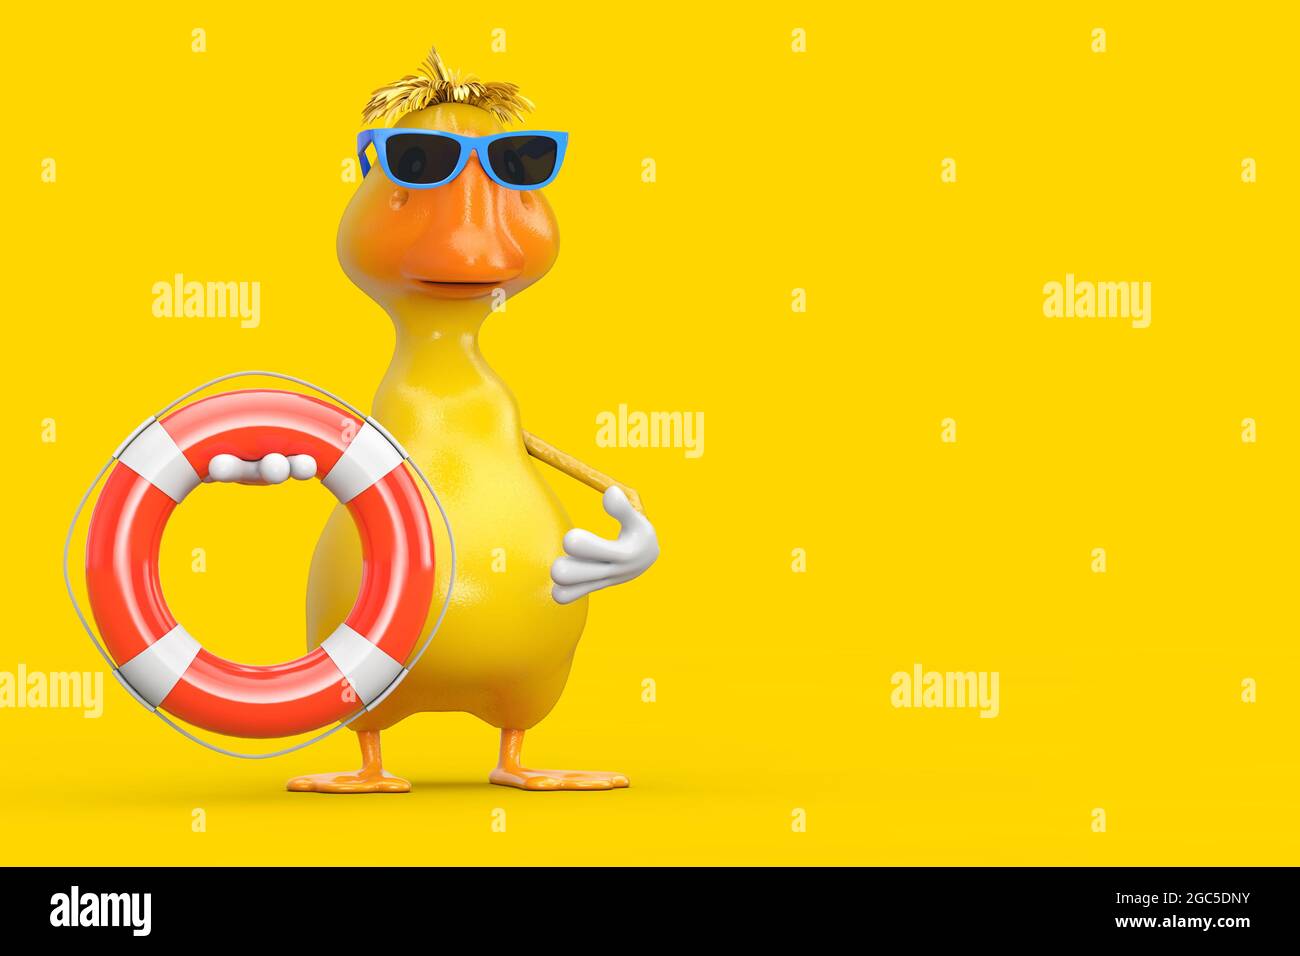 Joli dessin animé jaune personnage de canard Mascot avec bouée de vie sur fond jaune. Rendu 3d Banque D'Images